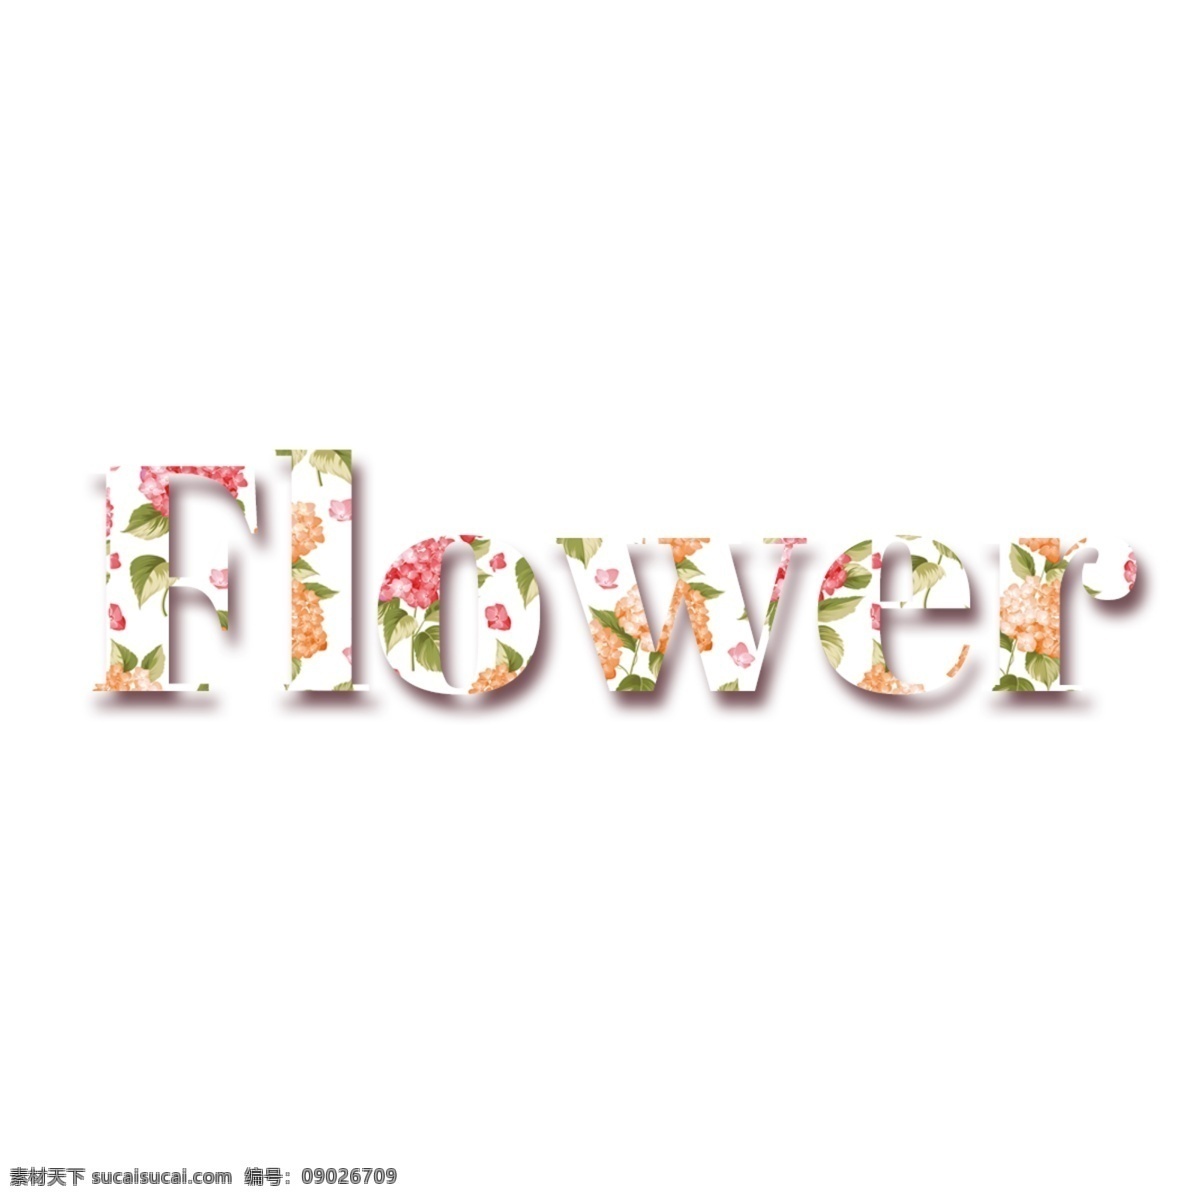 五颜六色 鲜花 简单 字体 多彩 花朵 美丽 清新 凉爽 背景 简单的字体 编辑 书法